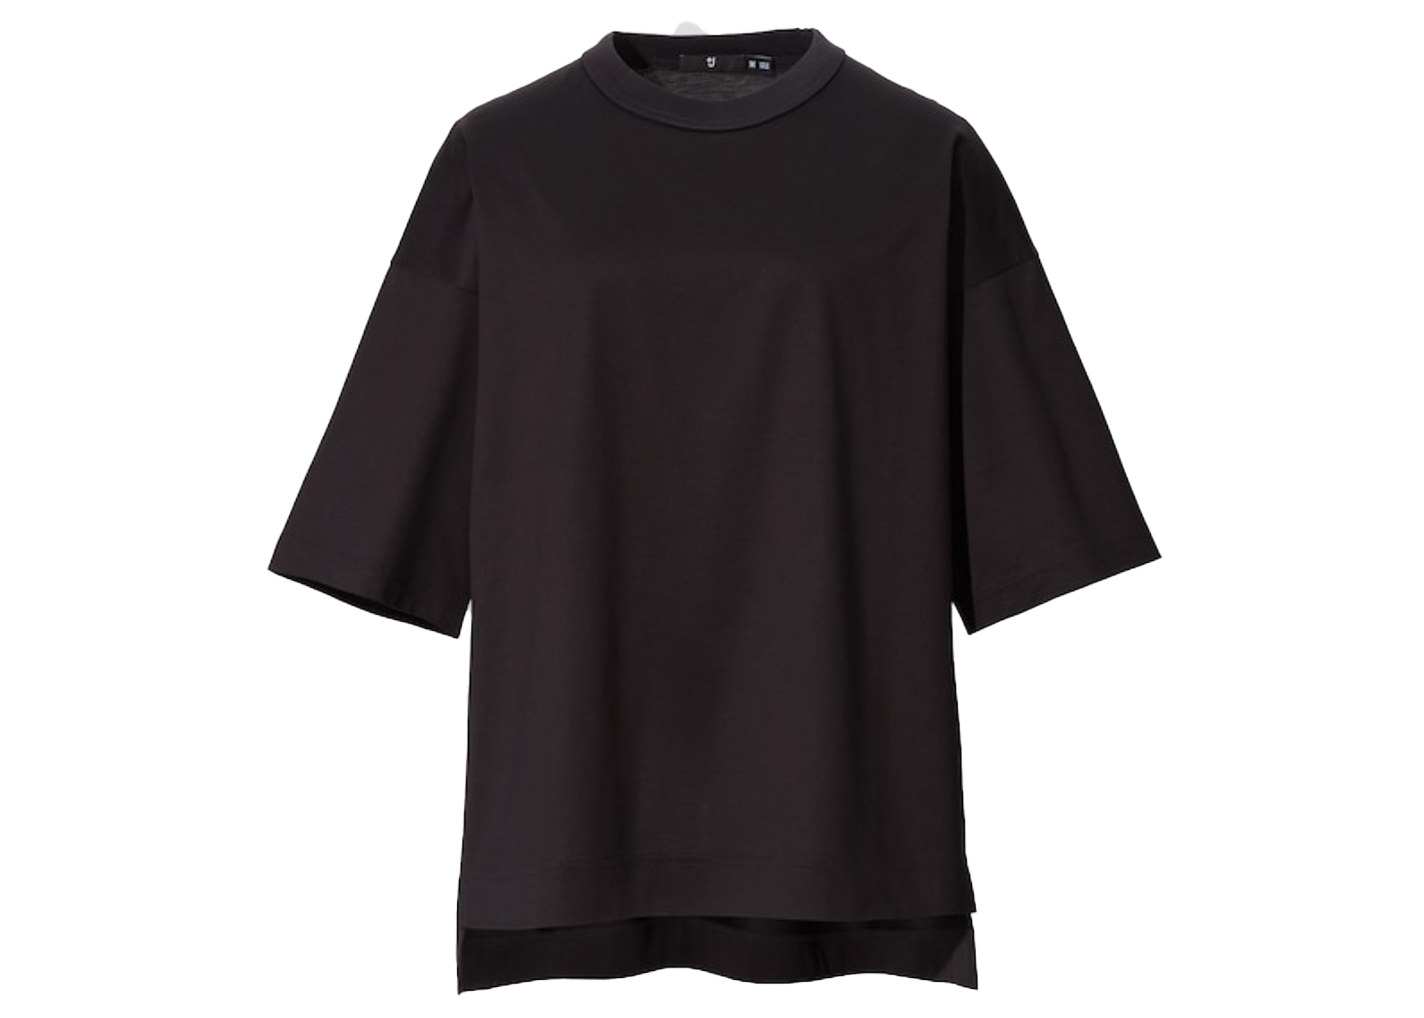 Uniqlo J Jil Sander Mens Striped Button Down Shirt Size XS  eBay